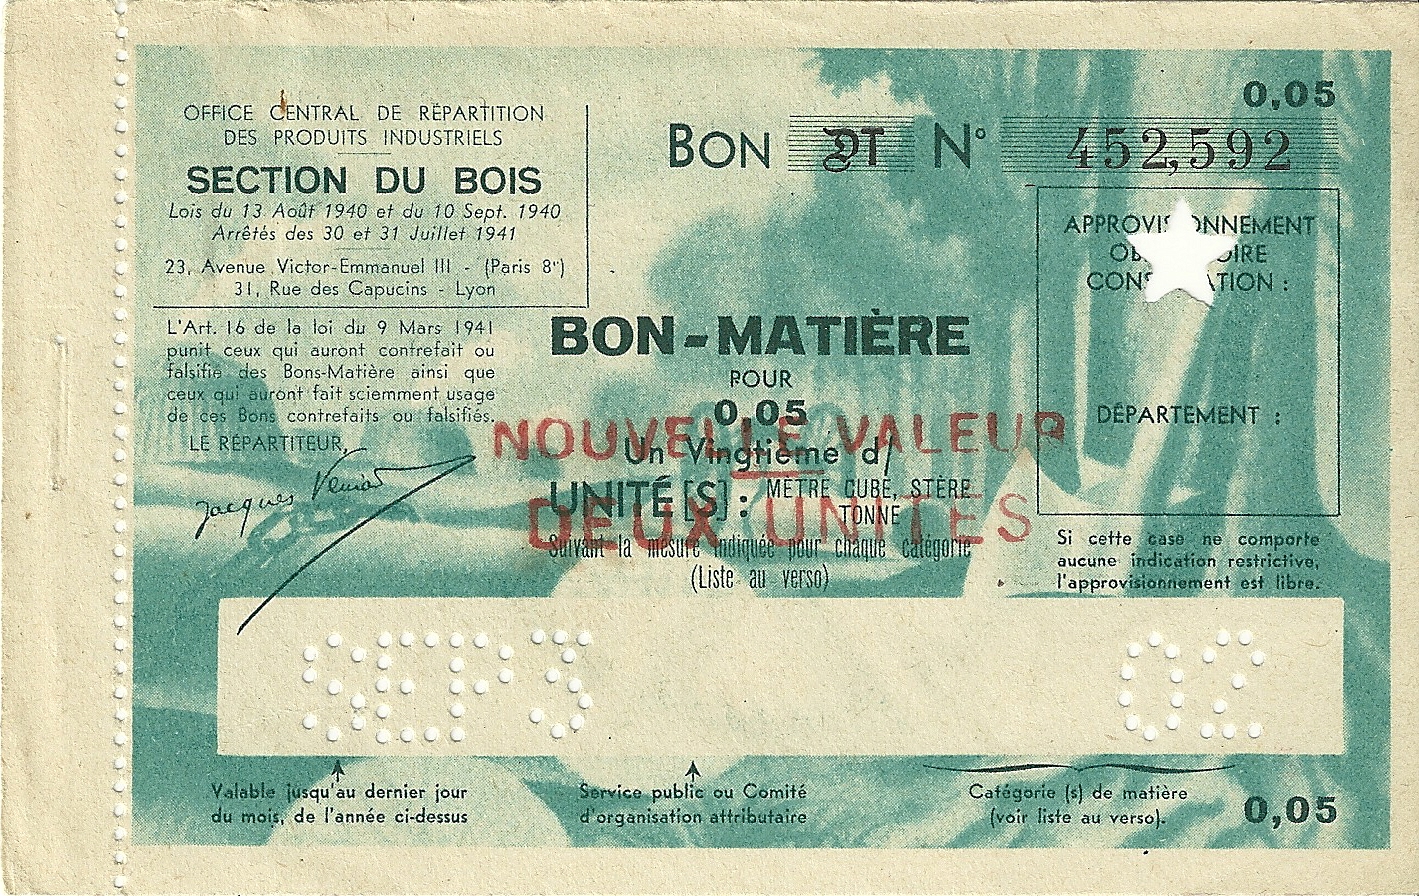 SECTION DU BOIS - BON DT - BON-MATIERE POUR 0.05 Un Vingtième d'UNITE - NOUVELLE VALEUR DEUX UNITES - 452,592